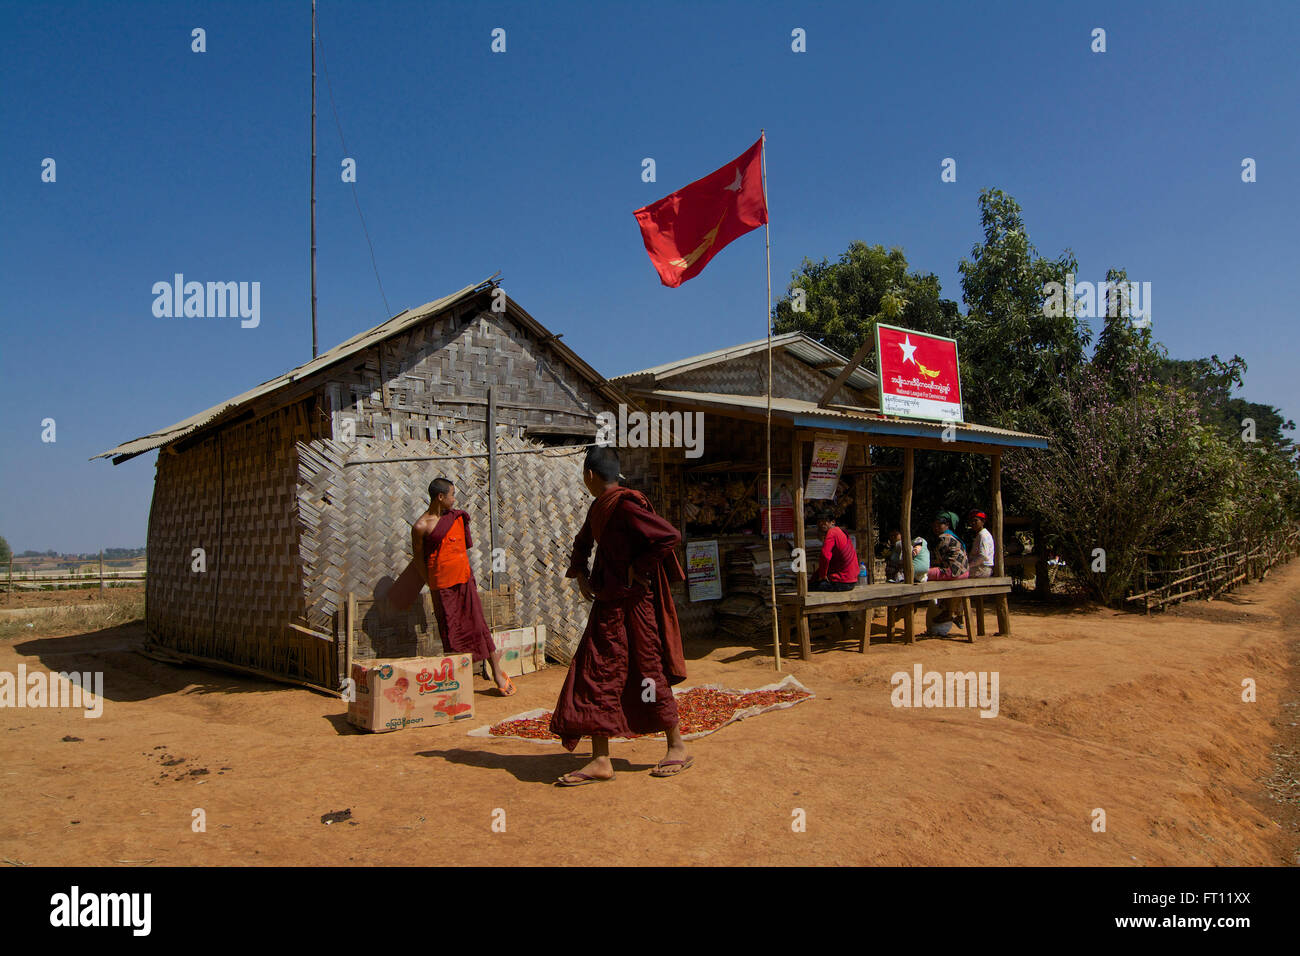 Trekking von Kalaw zum Inle-See, Partei-Werbung für die Nationalliga für Demokratie auf einen kleinen Laden, Shan State in Myanmar, Burma Stockfoto